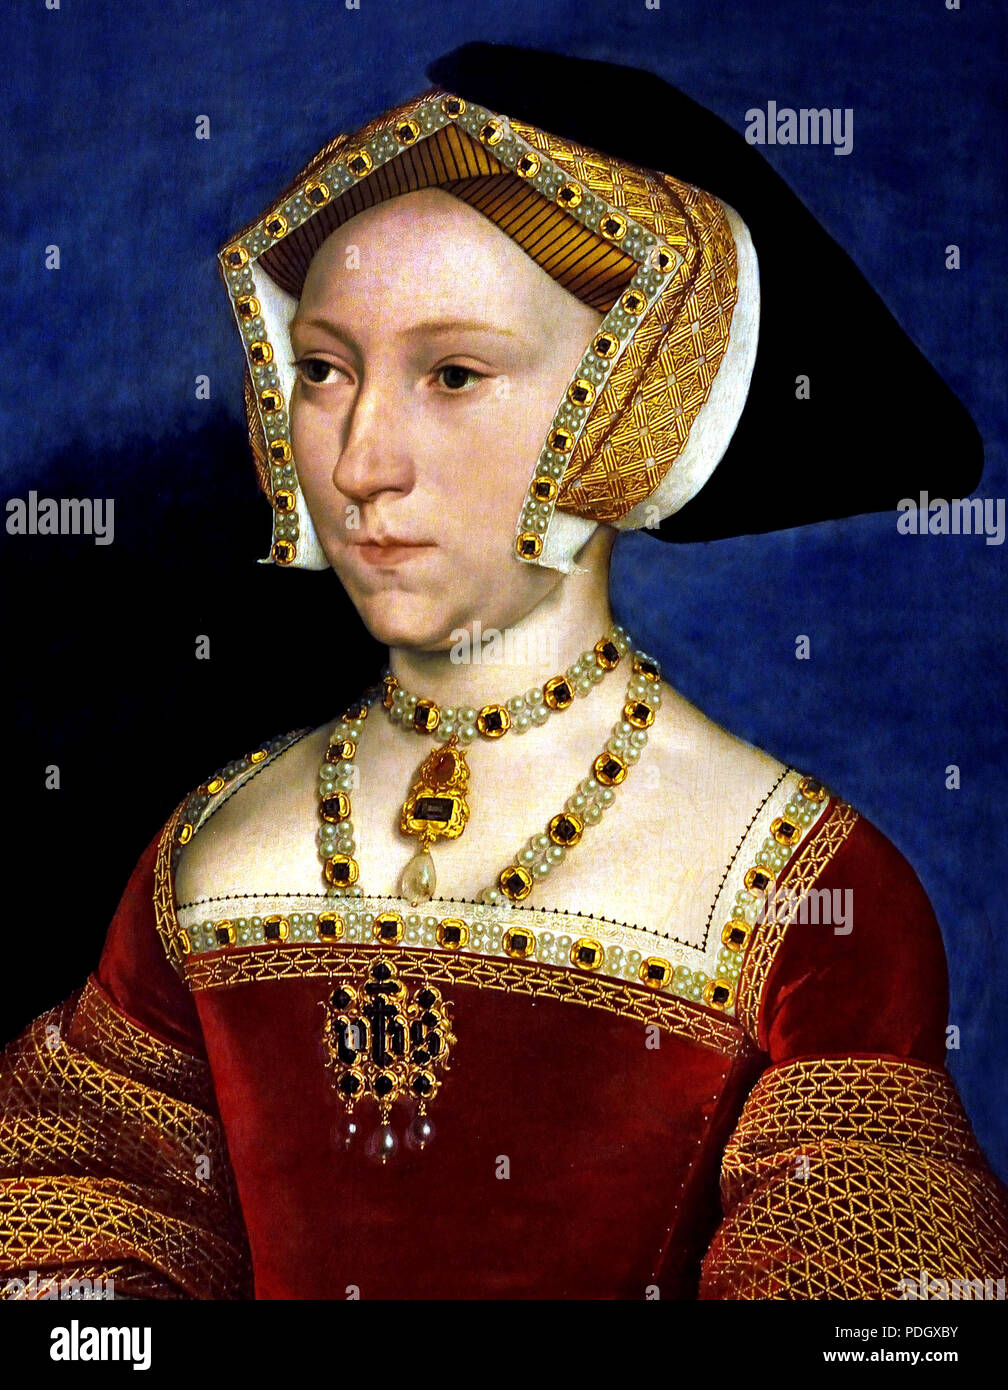 Jane Seymour (um 1509-1537 von Hans Holbein (der Jüngere) Deutscher Deutschland Jane Seymour mit dem Englischen König Henry VIII (1491 - 1547) als Herrscher verheiratet. Zwischen der Ehe des Paares am Ende Mai 1536, die von Jane's Proklamation an die Königin ein paar Tage später folgte und der frühe Tod des noch nicht dreissig Jahre alt, im Oktober 1537. Stockfoto